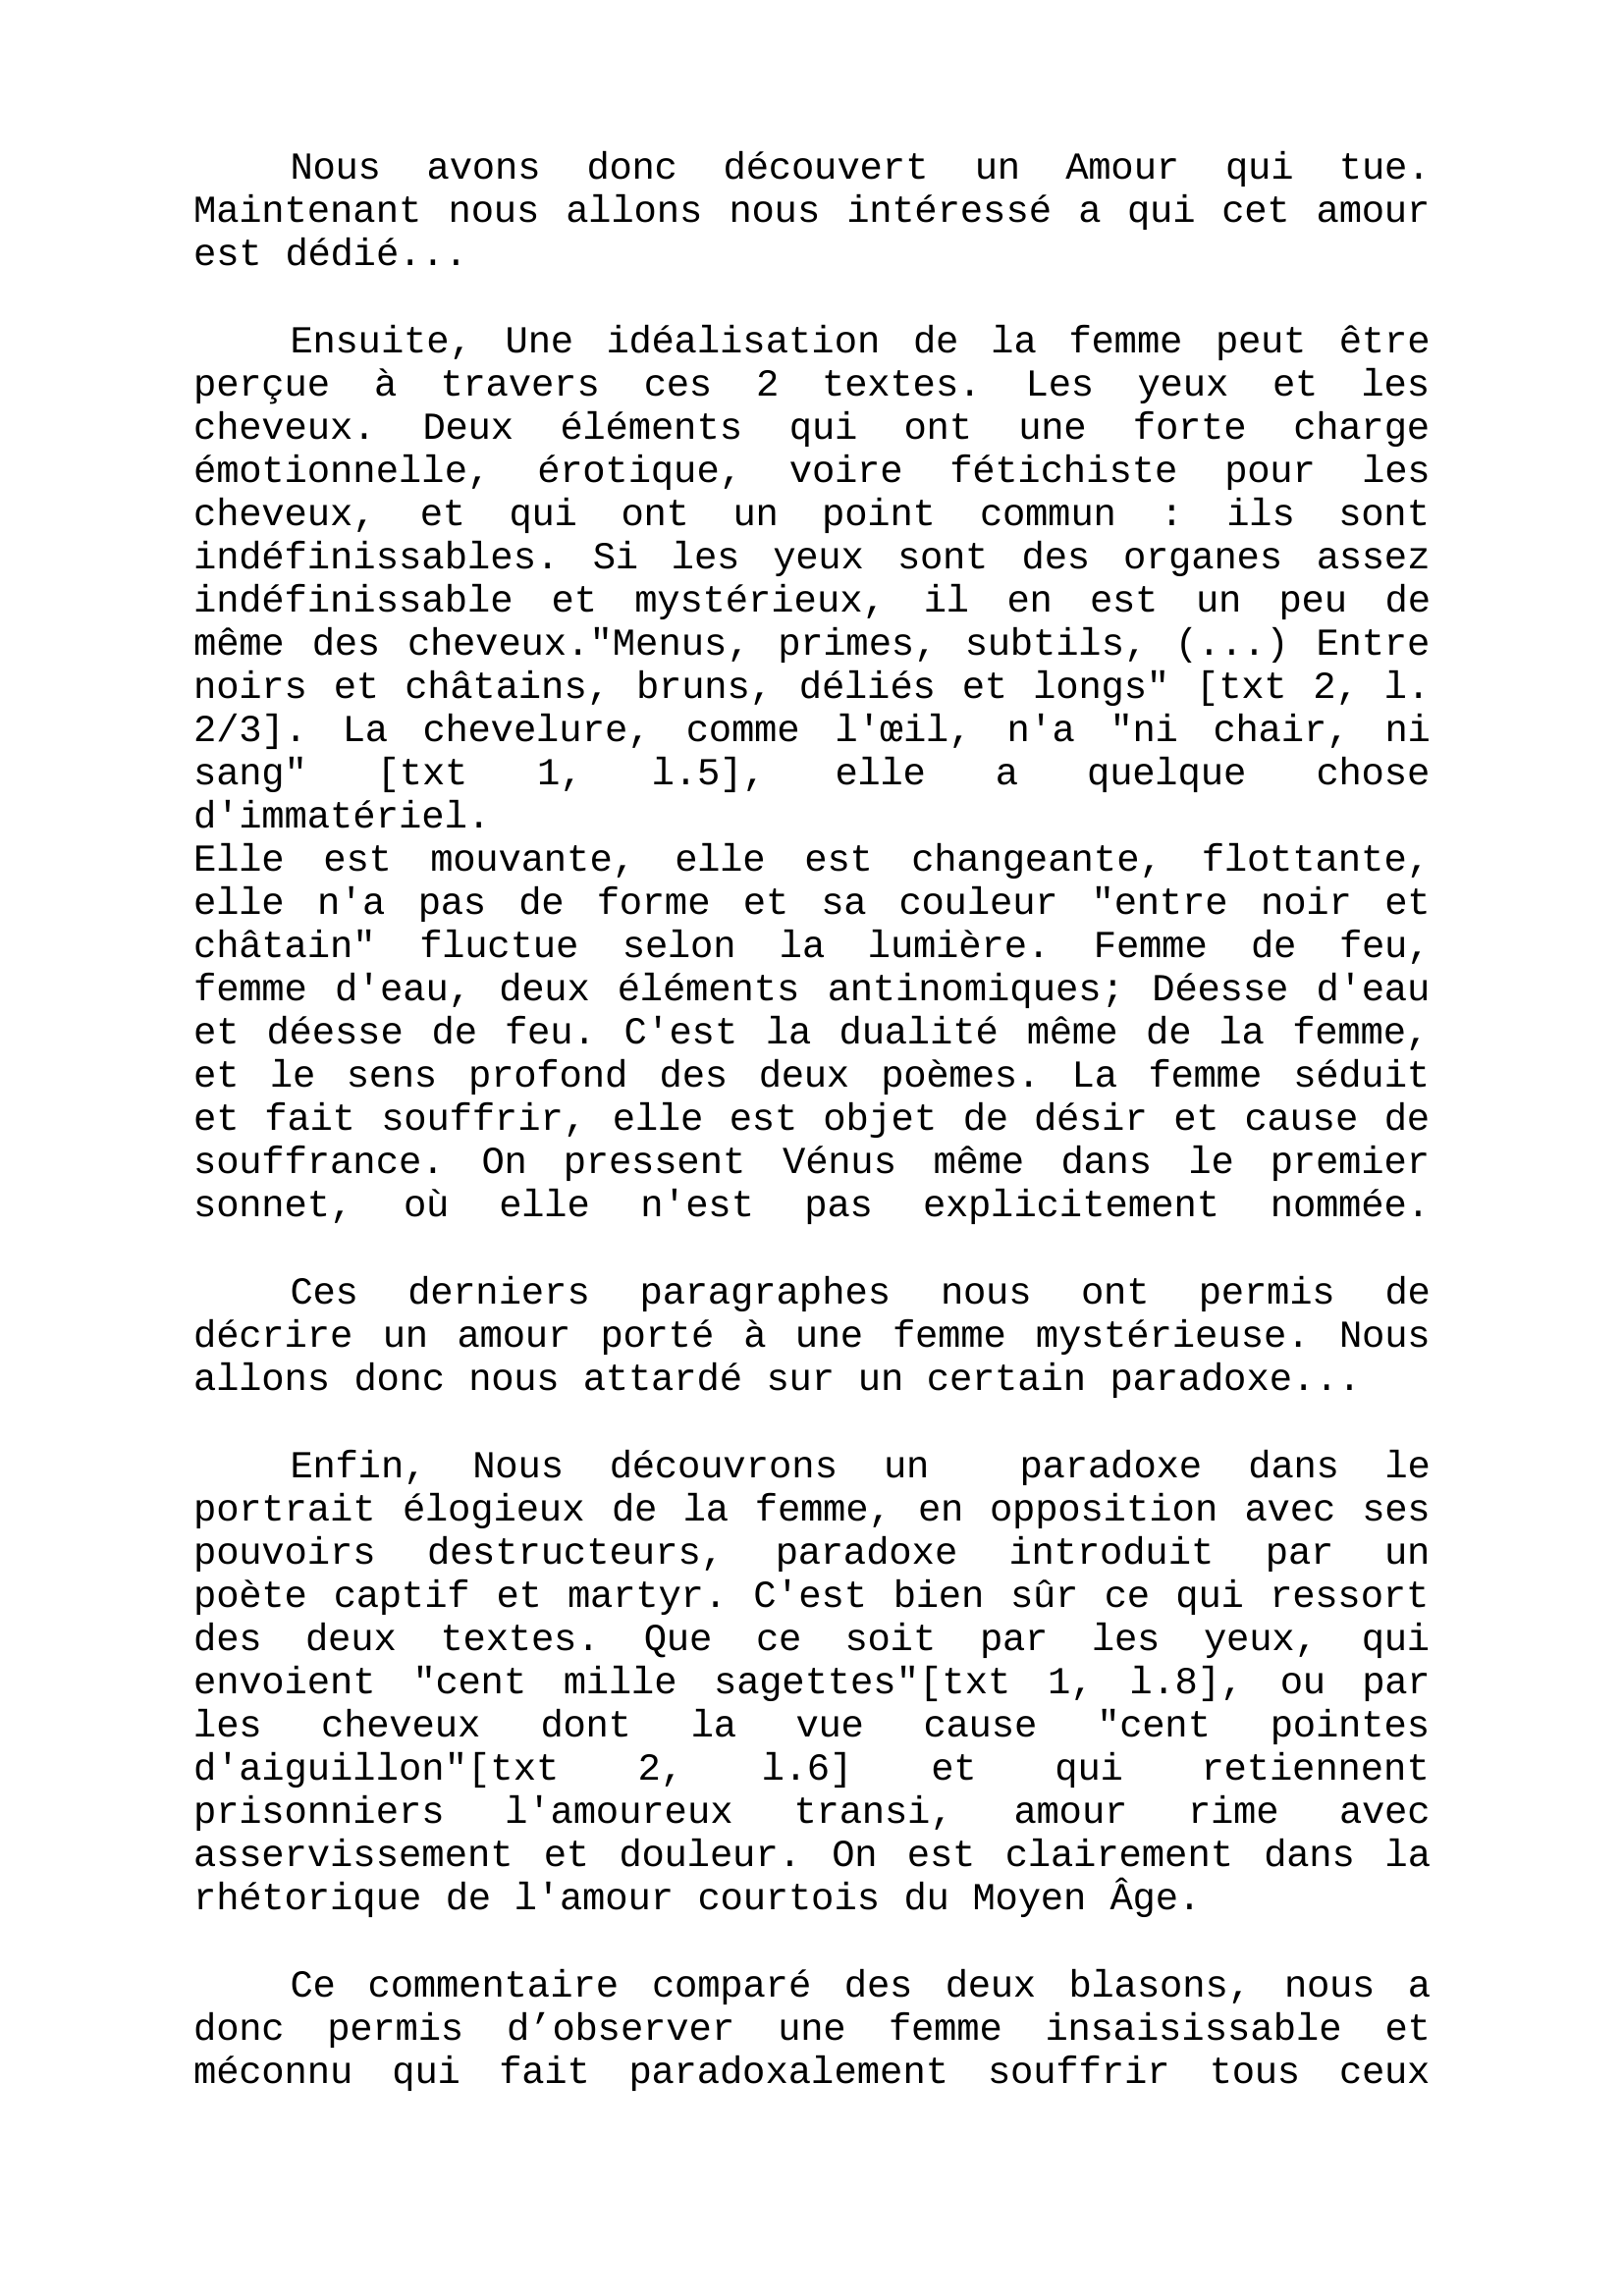 Prévisualisation du document Ronsard - Commentaire comparé de français : sonnets XXXIX et LI publié en 1578 dans le recueil : Le second livre des sonnets pour Hélène